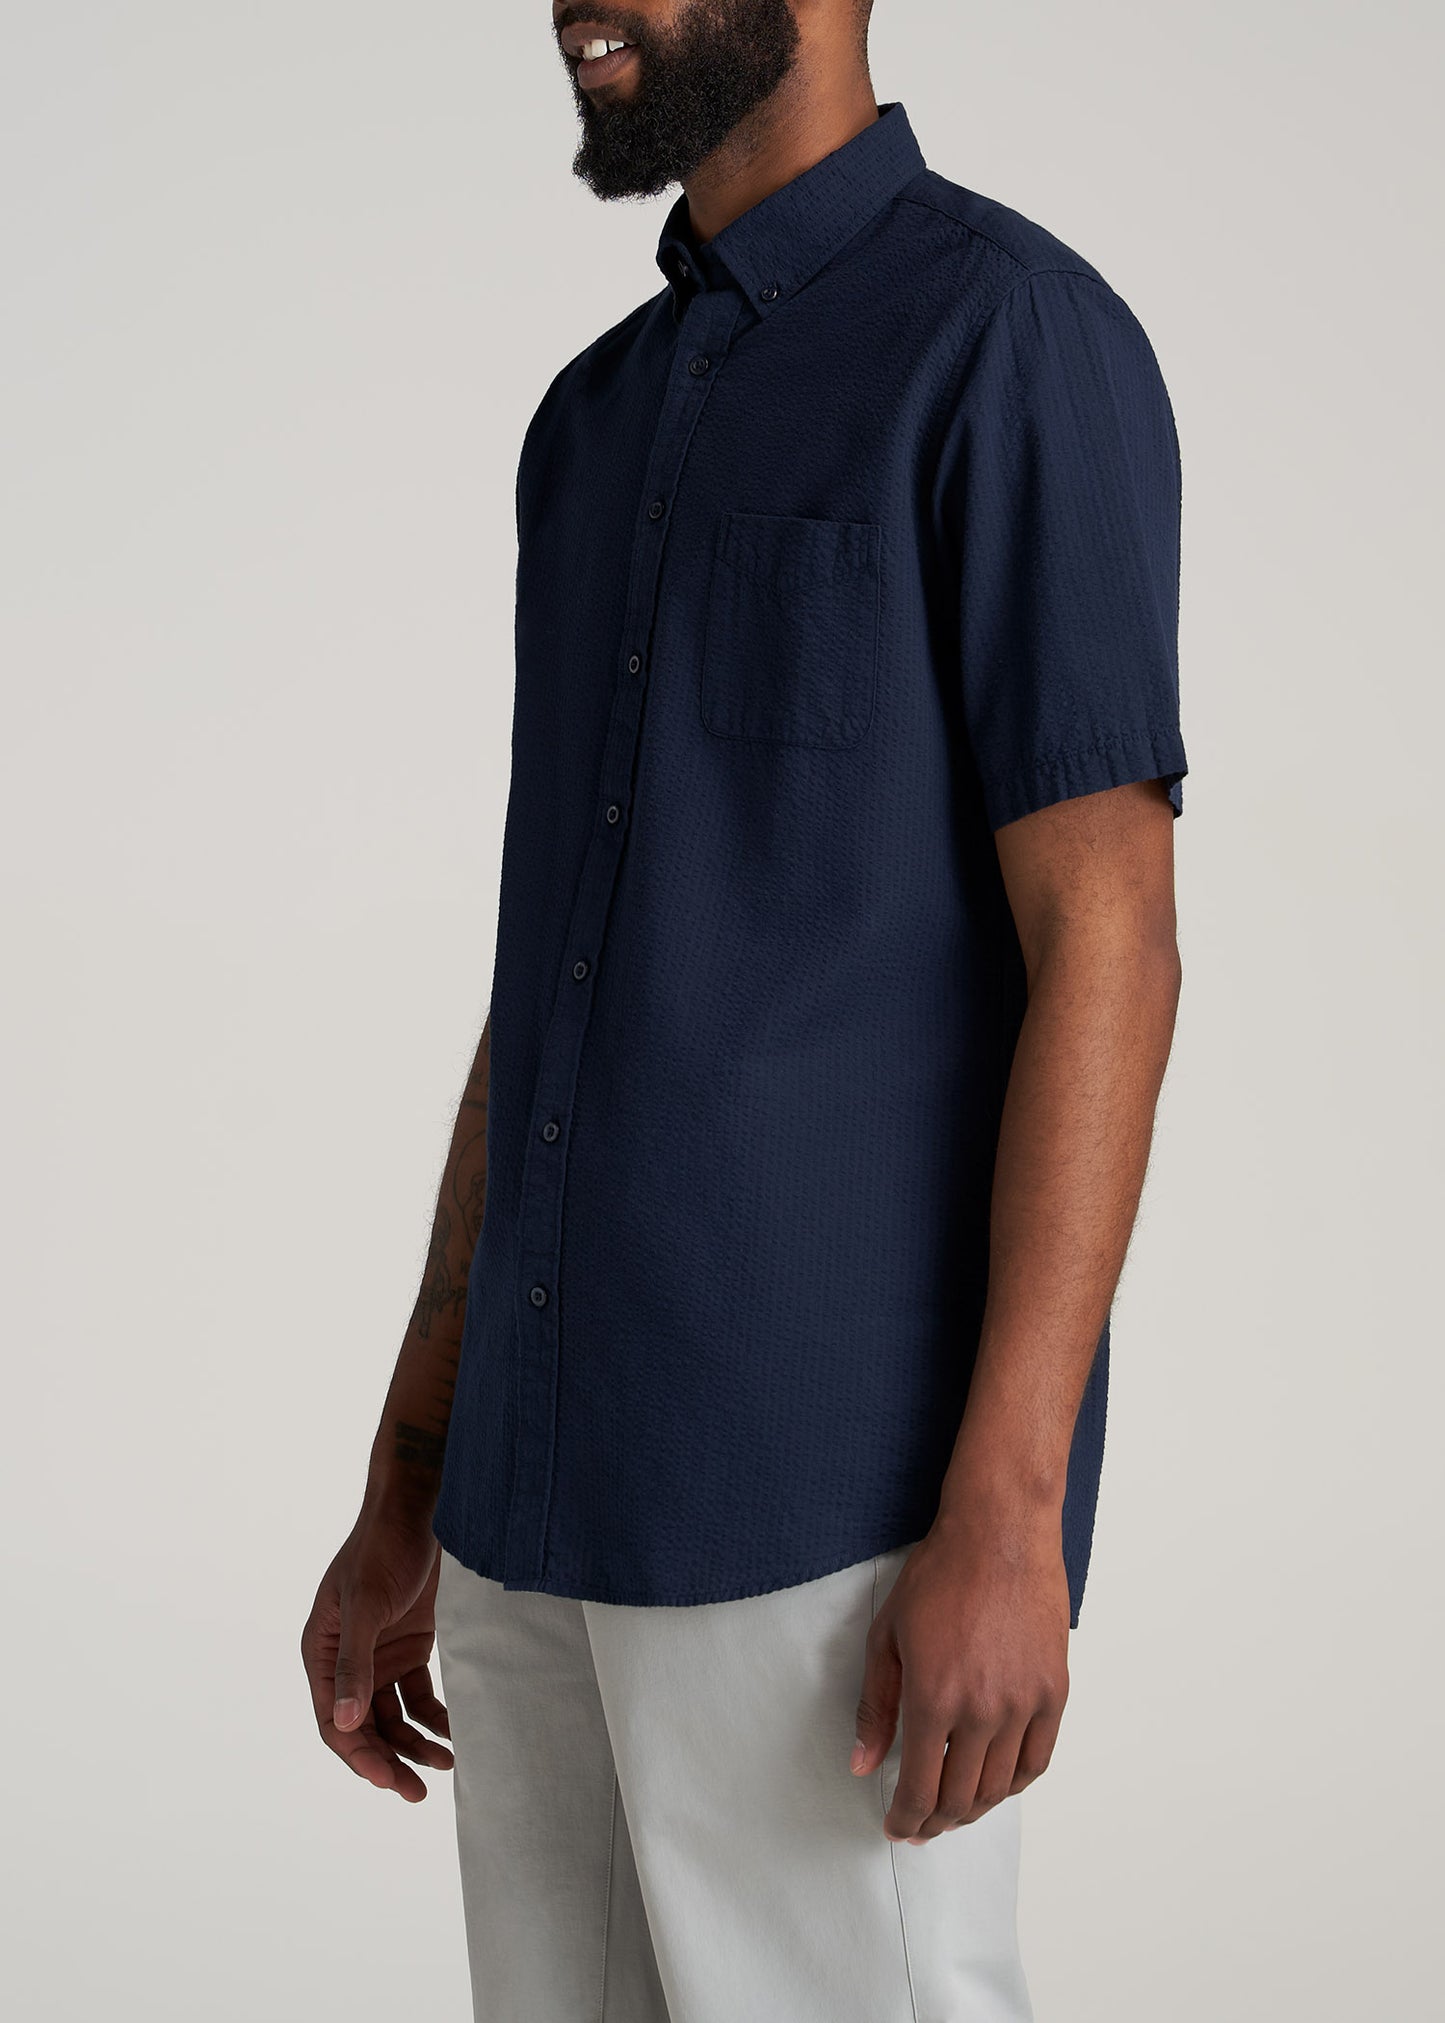 Navy Seersucker Shirt: Tall Men Short Sleeve Navy Shirt – American Tall